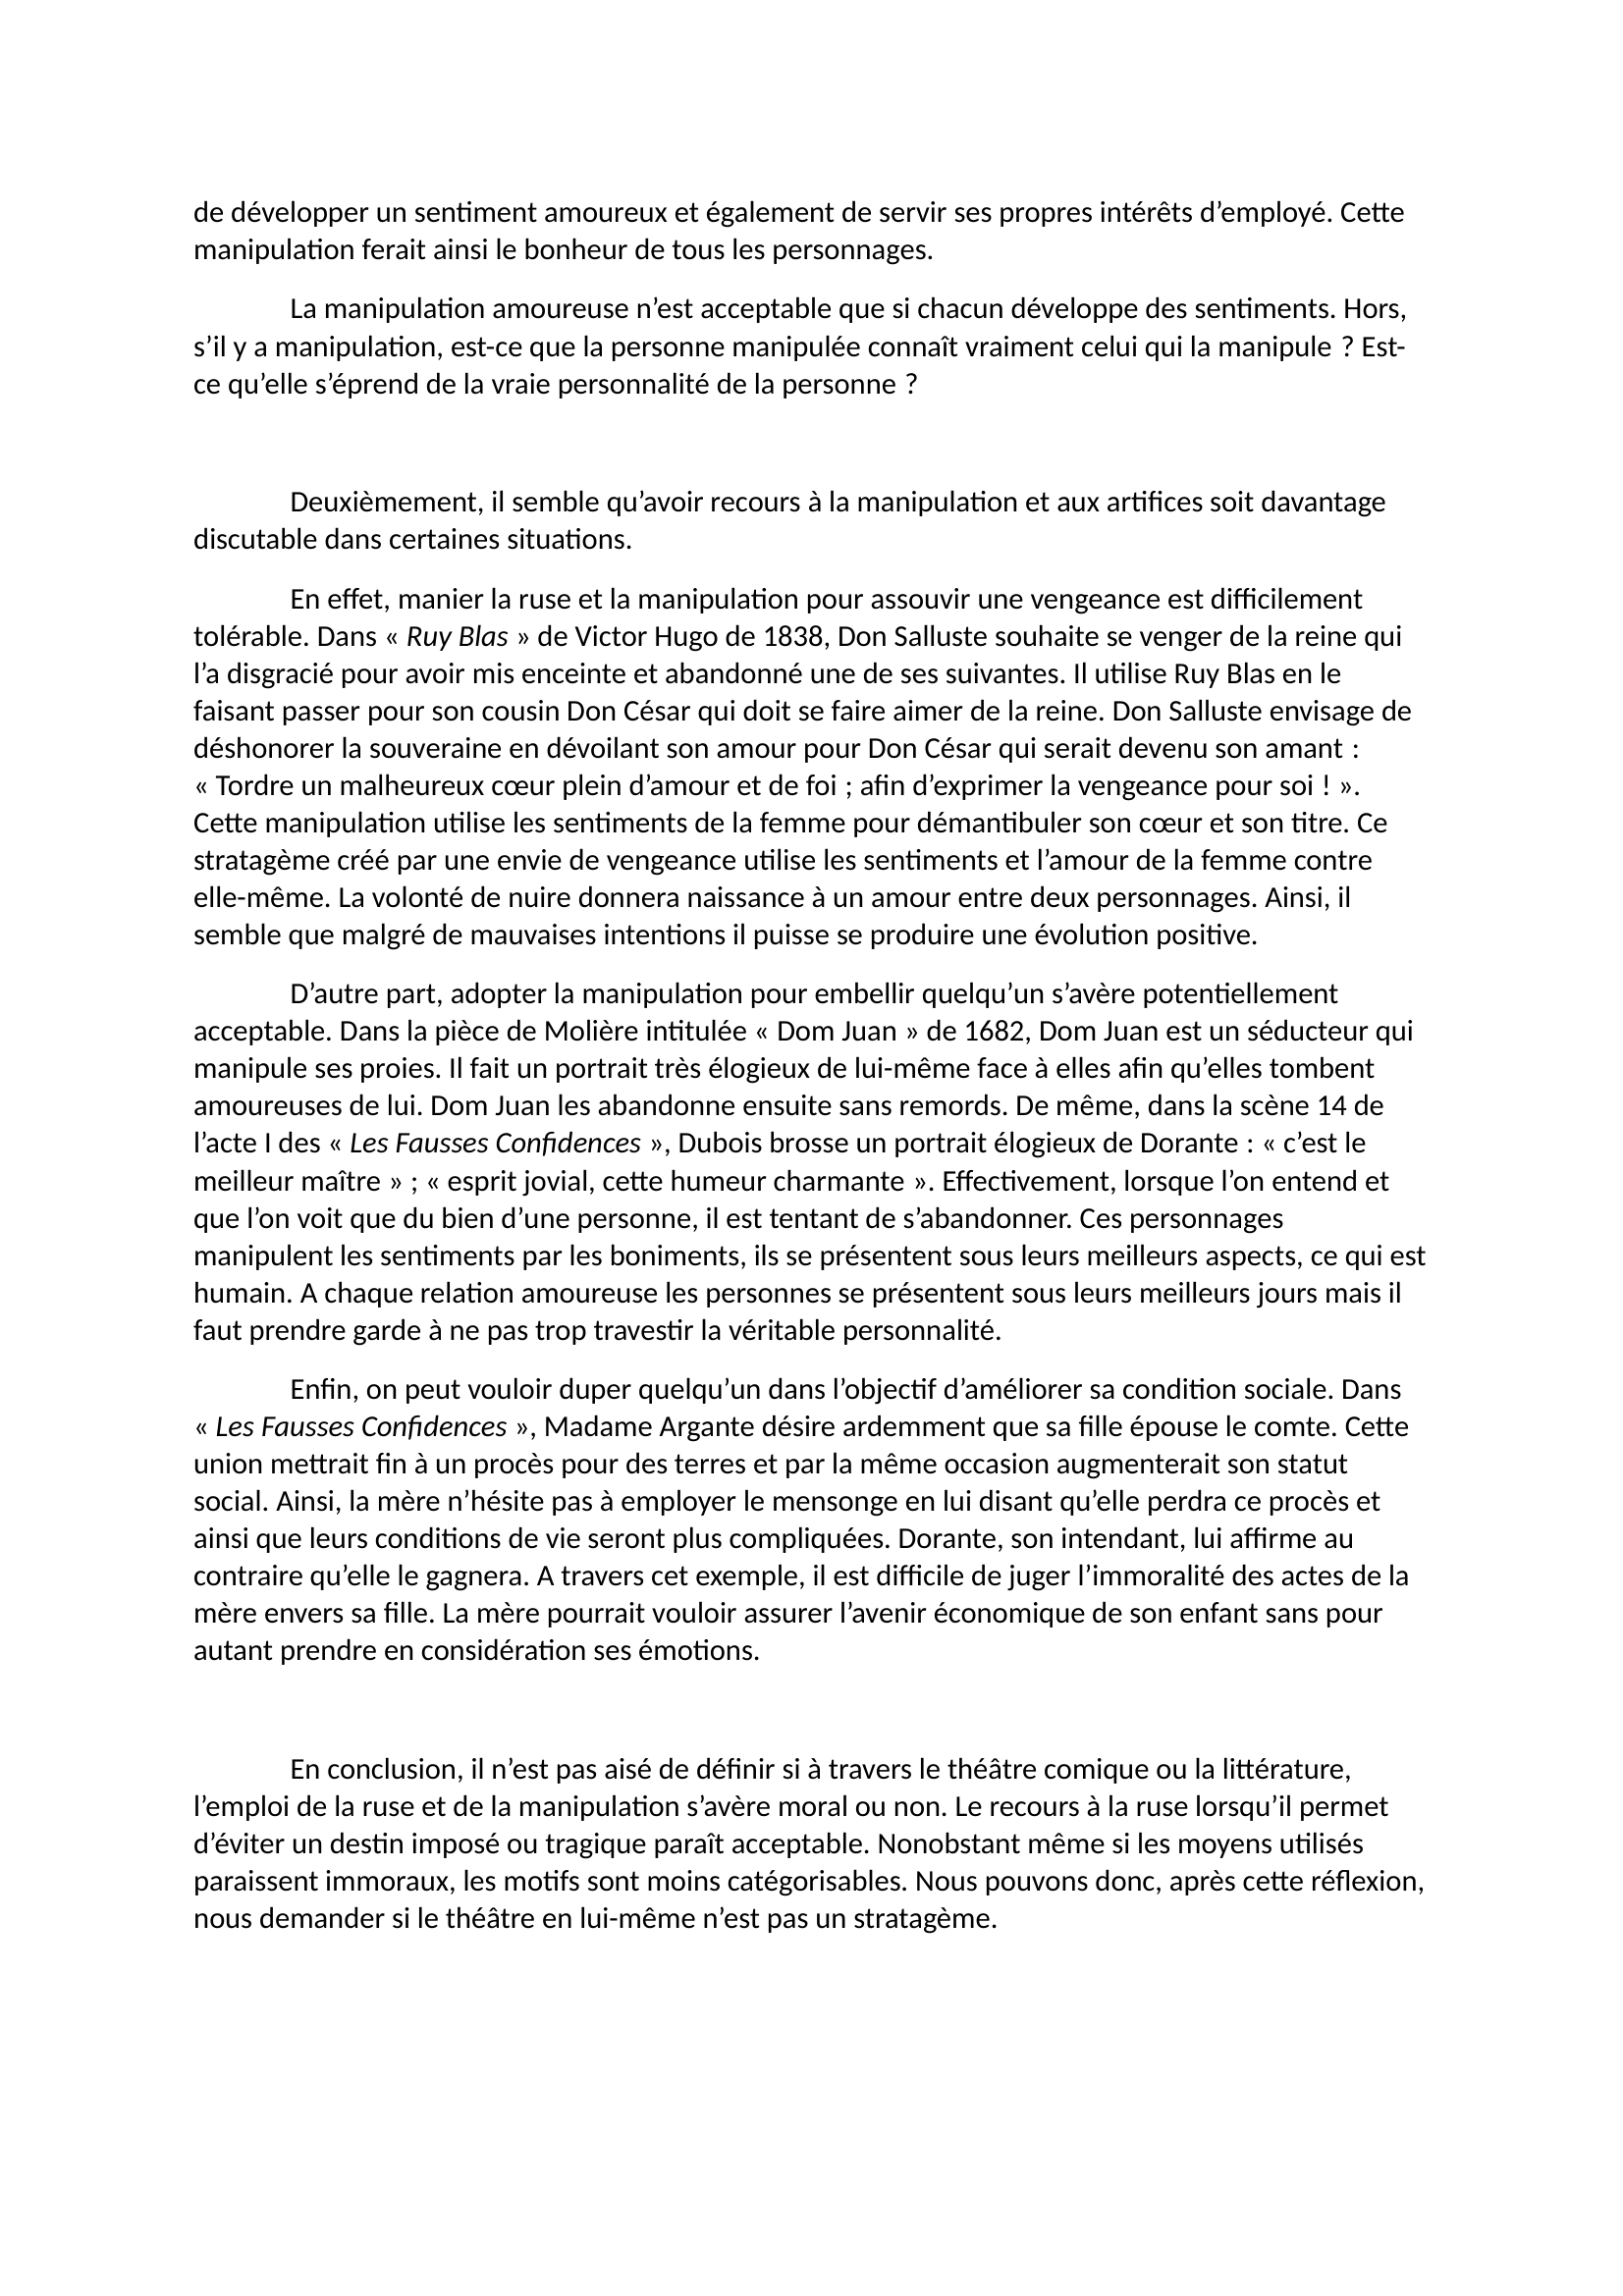 Prévisualisation du document Alizée MARANO 1G1 
 
Dissertation Marivaux 
 
La